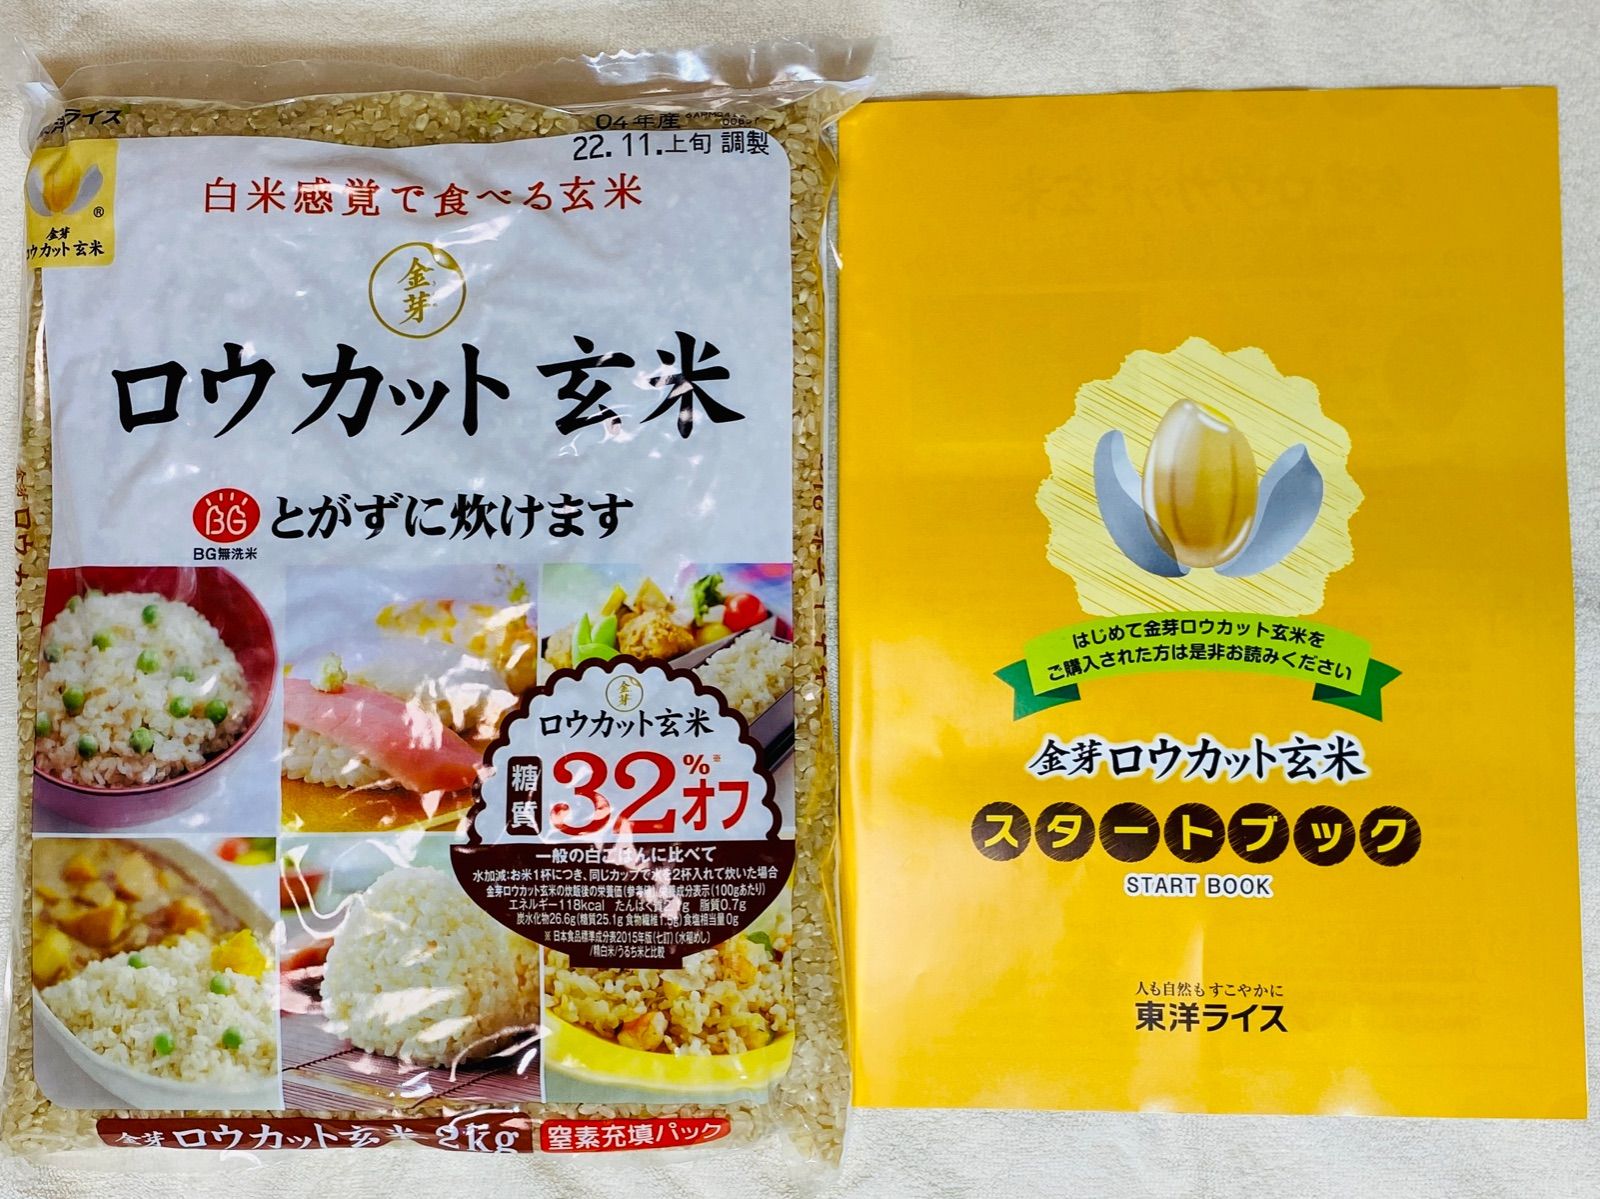 金芽ロウカット玄米(無洗米) 4kg 白米感覚で食べる玄米